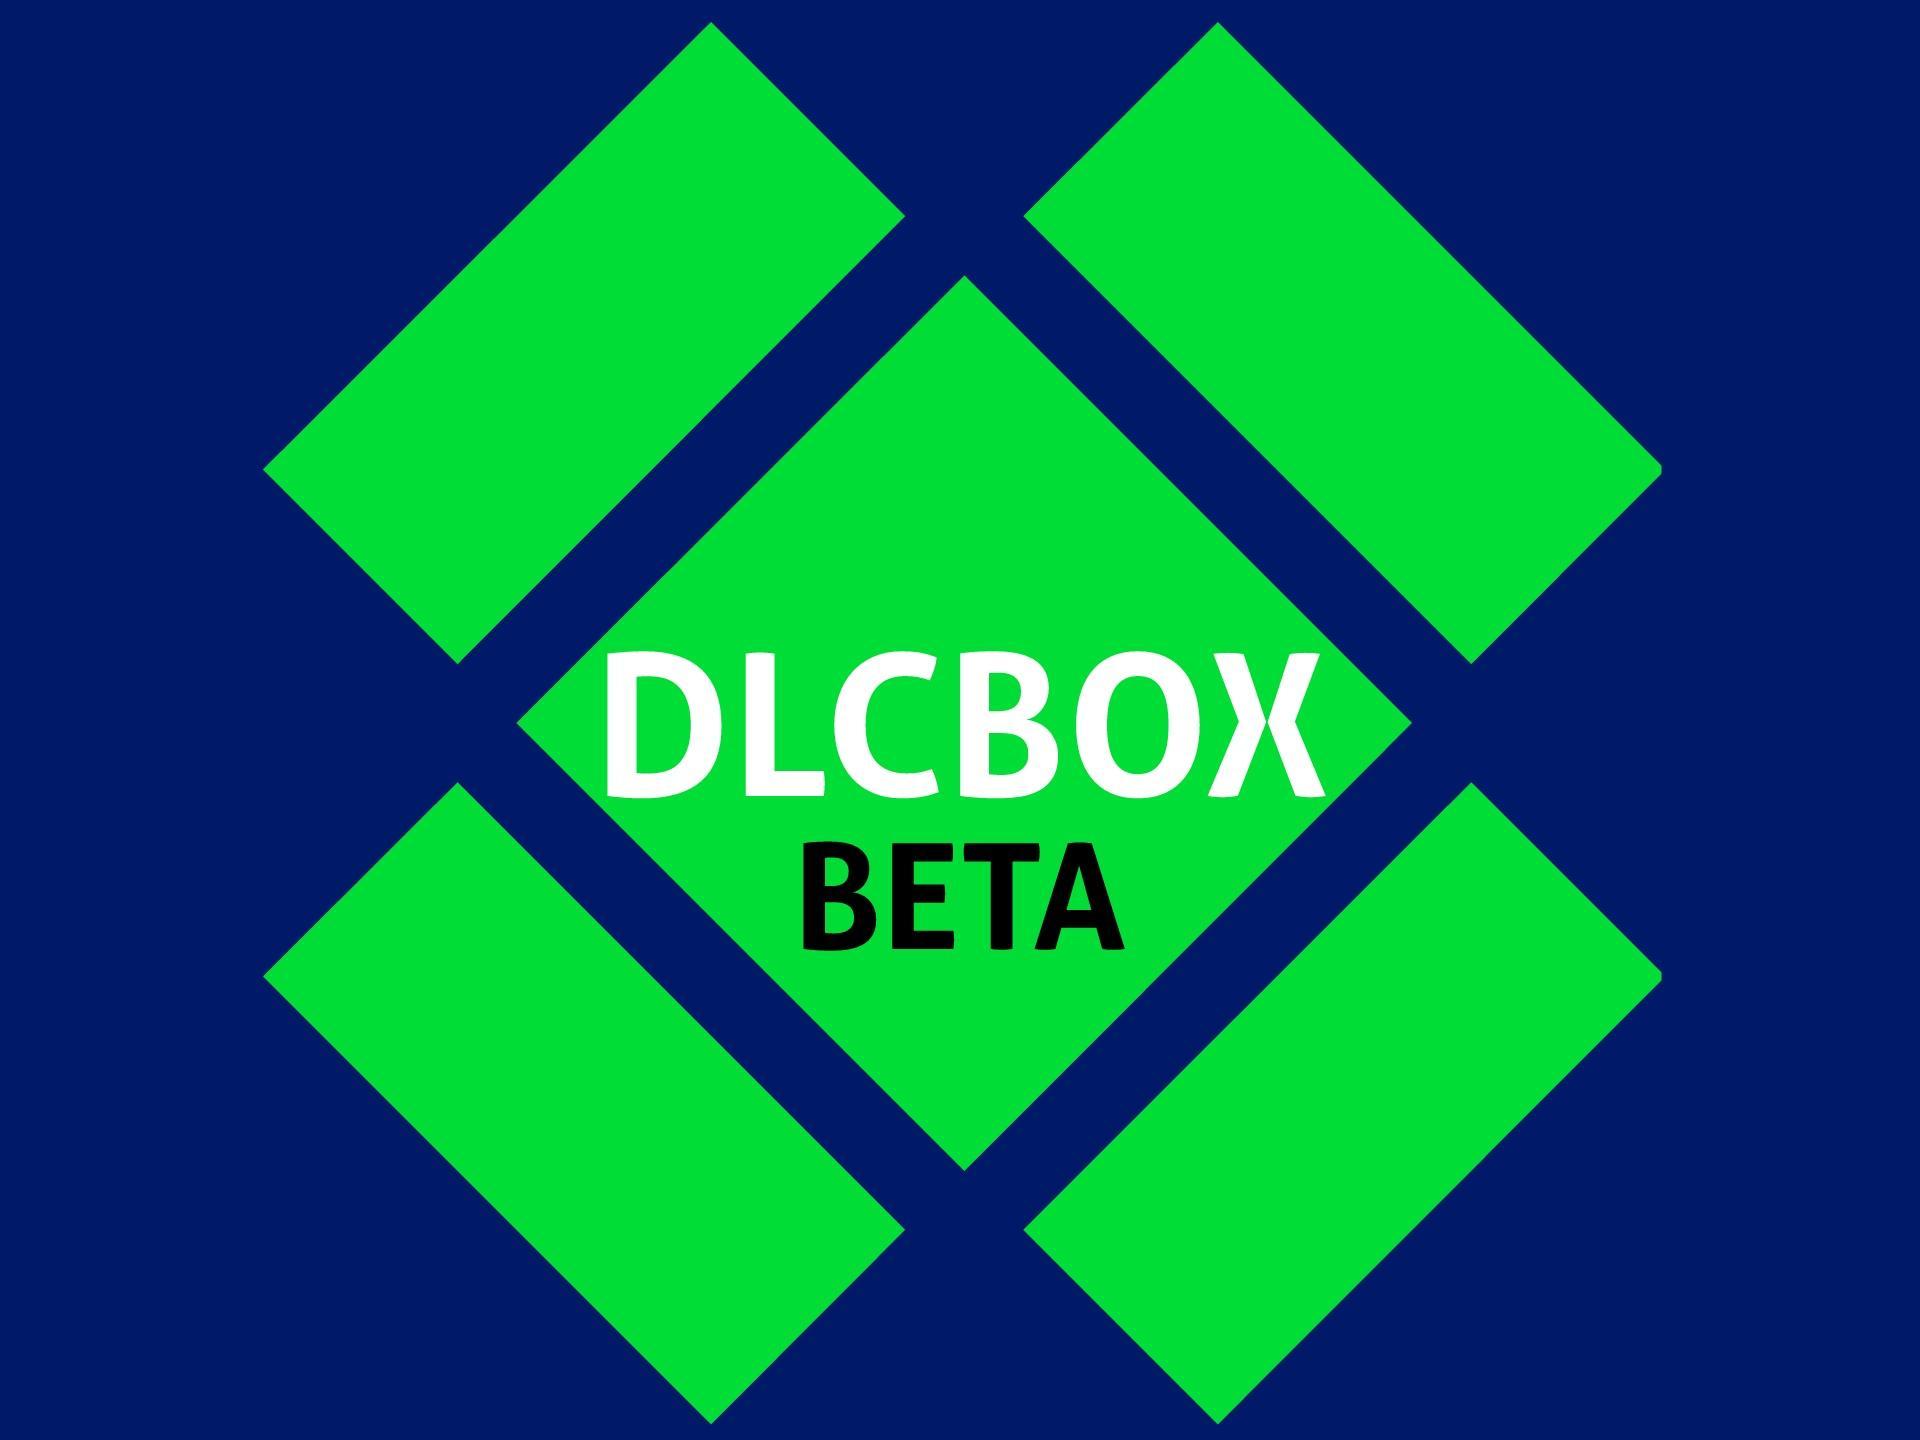 DLC BOX